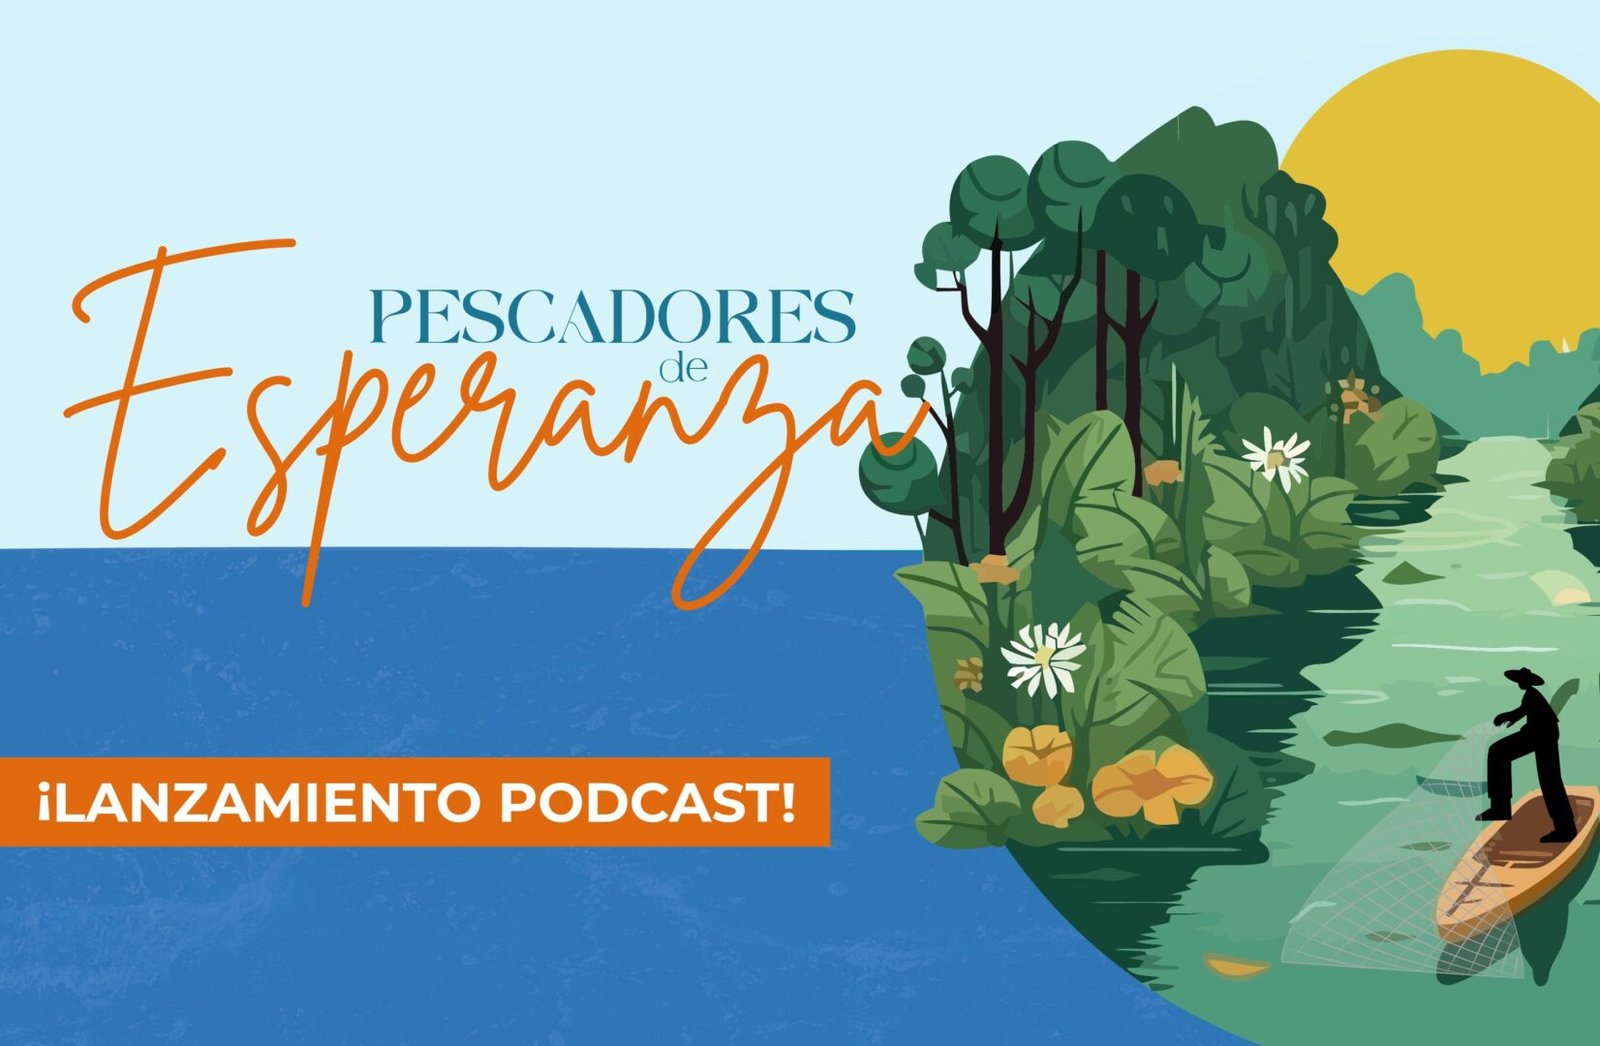 Serie de podcast titulado “Pescadores de esperanza. Tejiendo redes de convivencia y paz”, sobre el conflicto armado en el país
